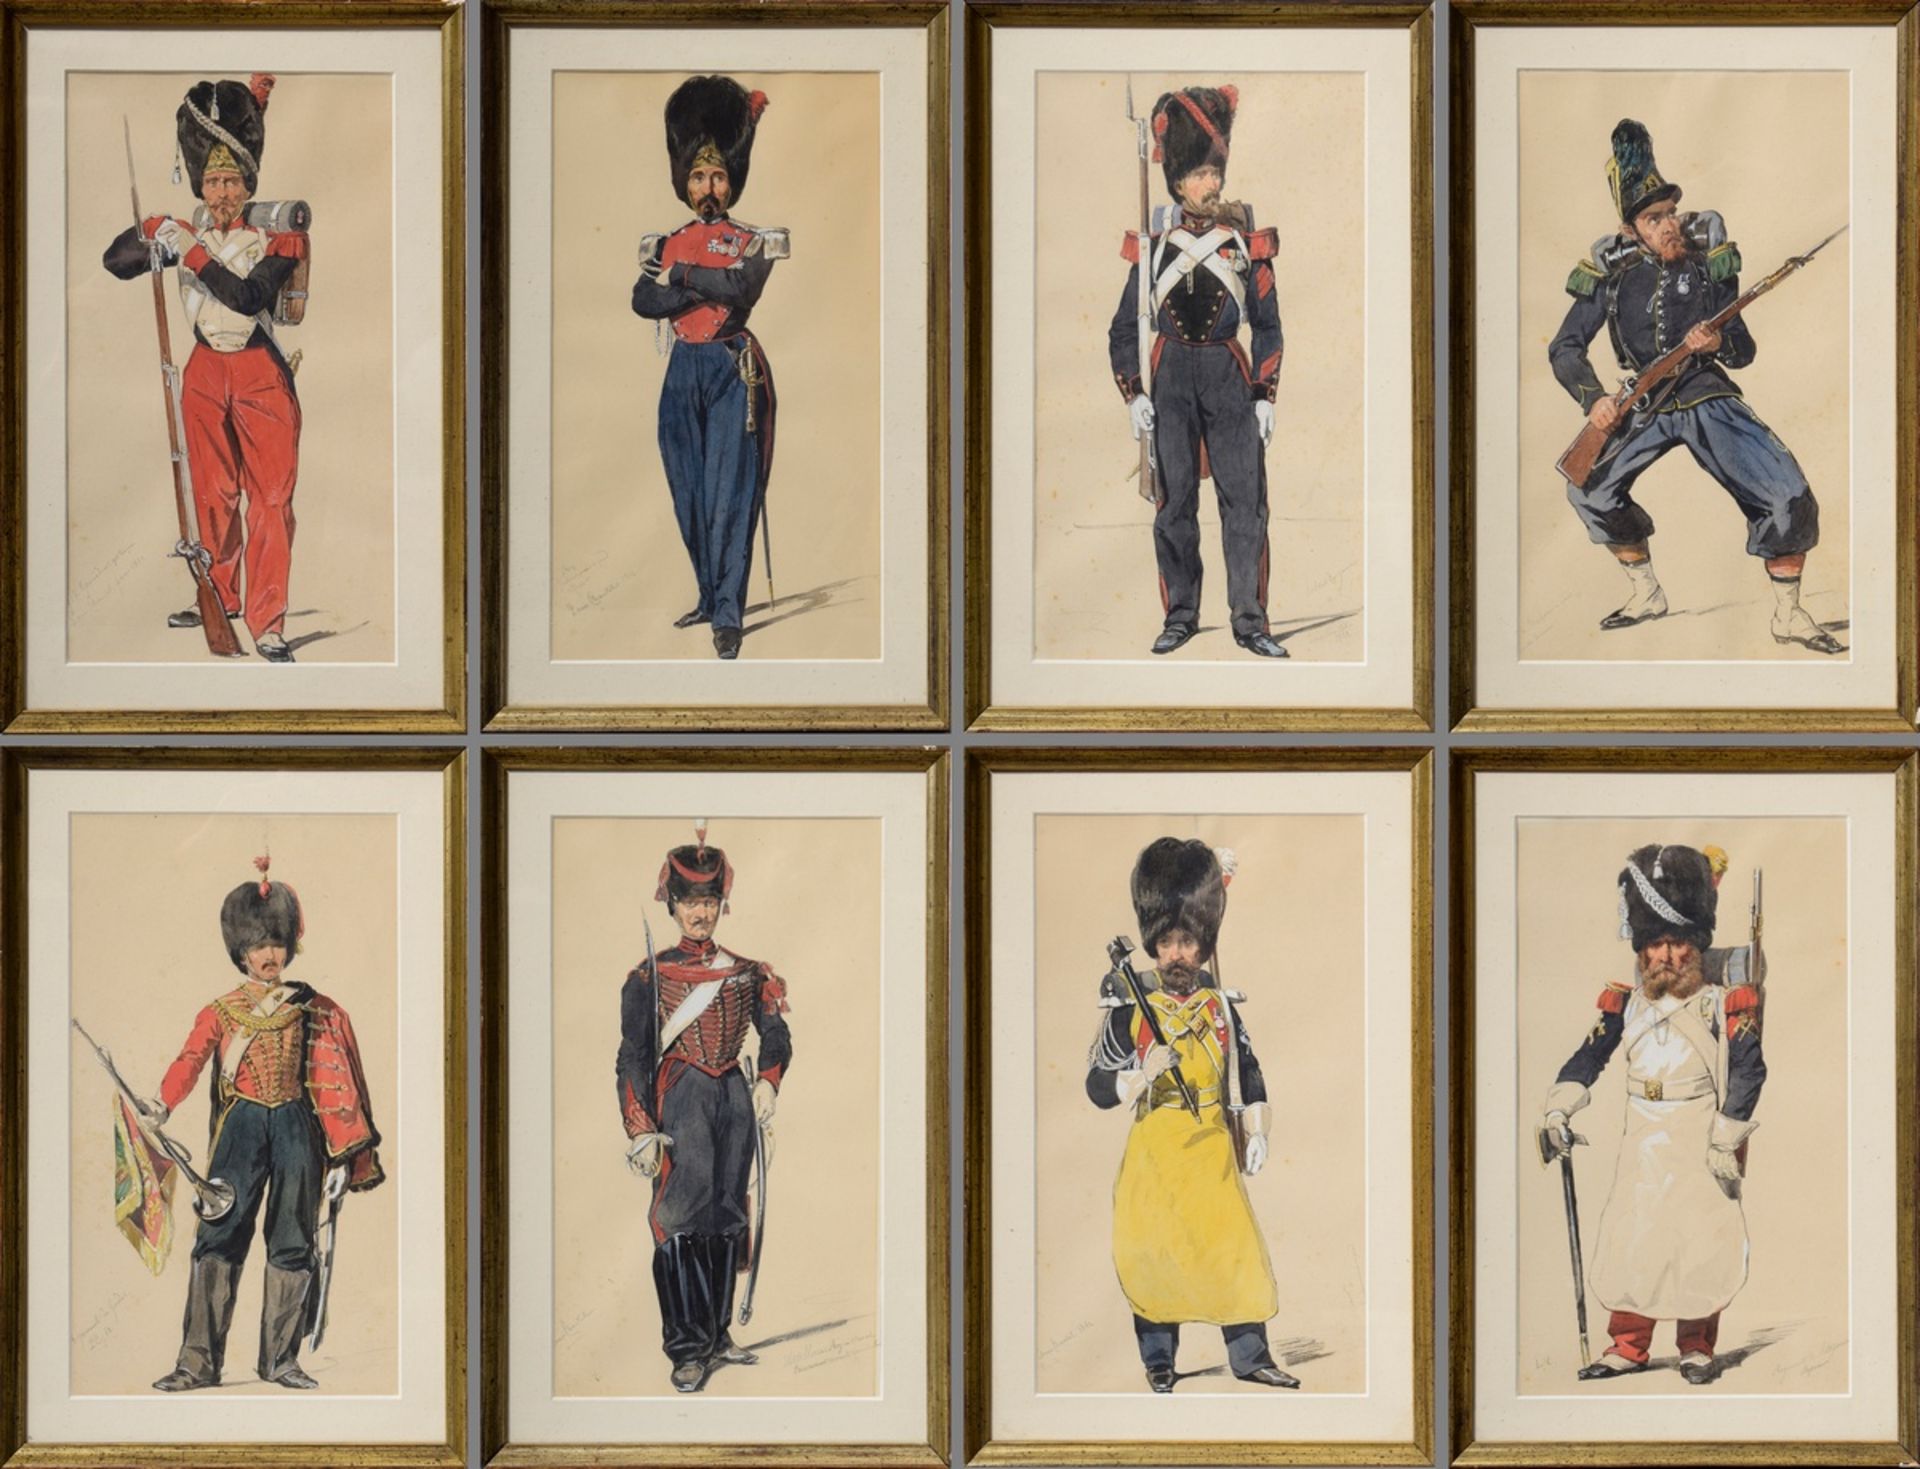 8 Chantal, Louis (1822-1899) "Napoleonische Soldaten", Bleistift/Aquarell, weiß gehöht, u. monogr. 